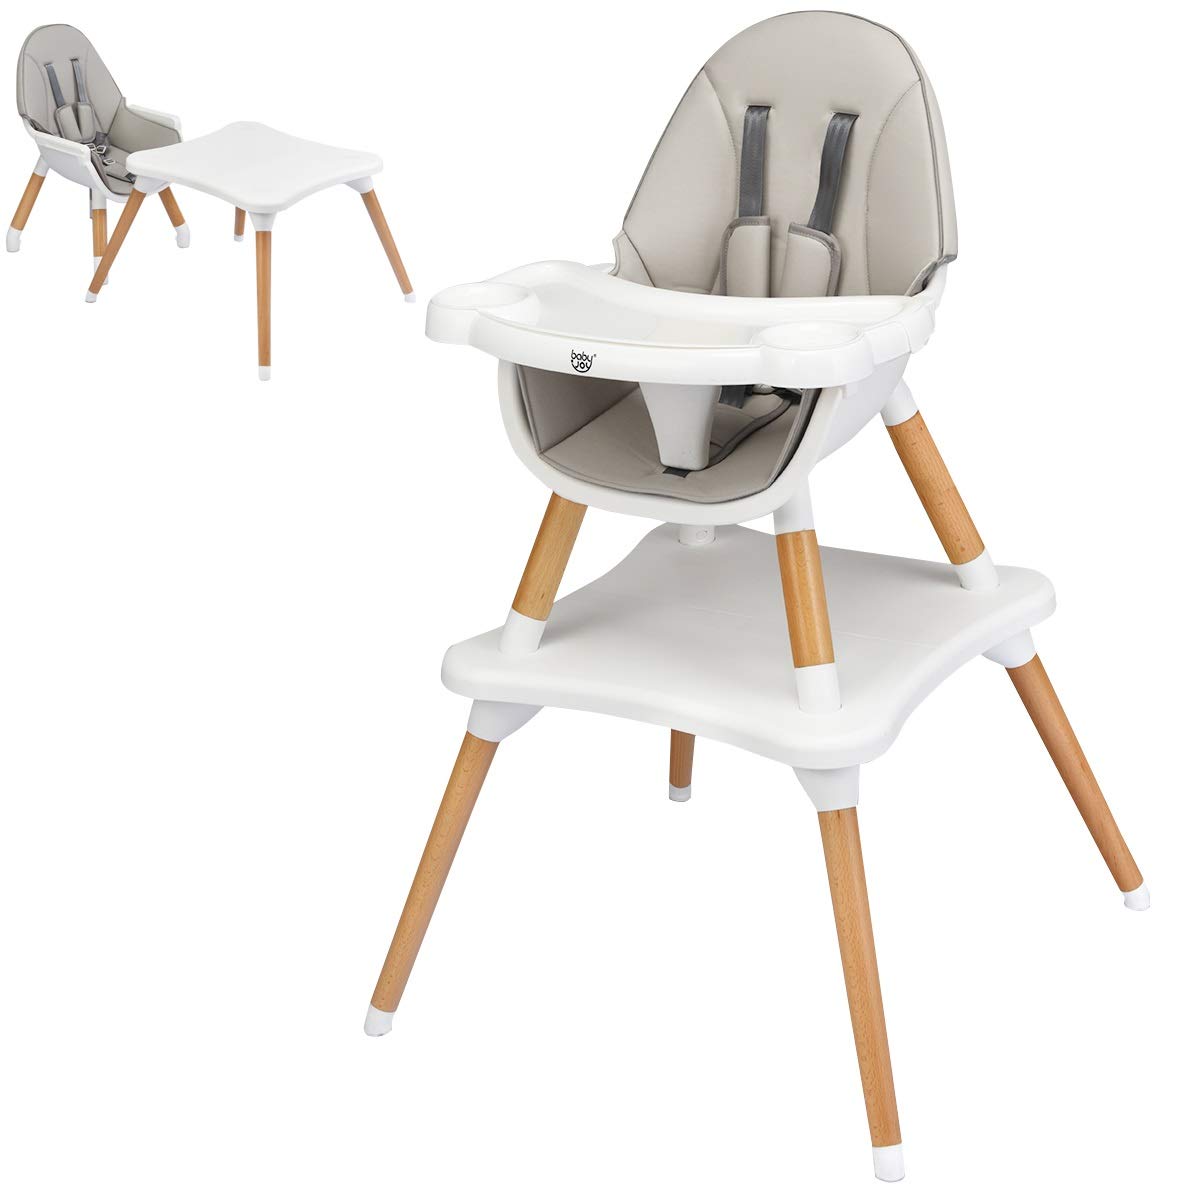 Детский стульчик-трансформер для кормления 5 в 1 Baby Joy, серый/белый детский стульчик трансформер для кормления baby joy бежевый